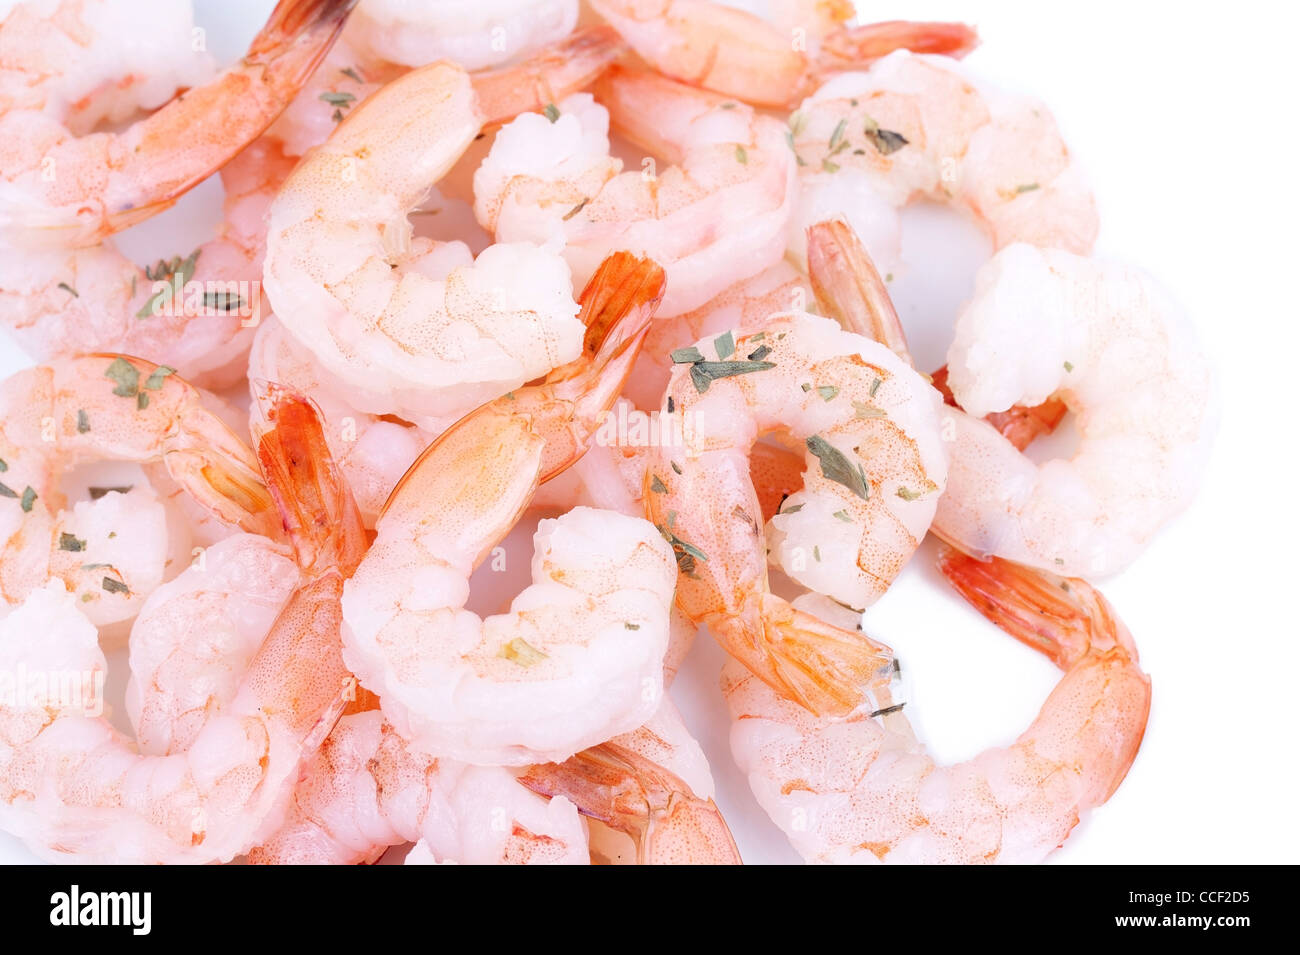 Closeup shrimps on white Stock Photo